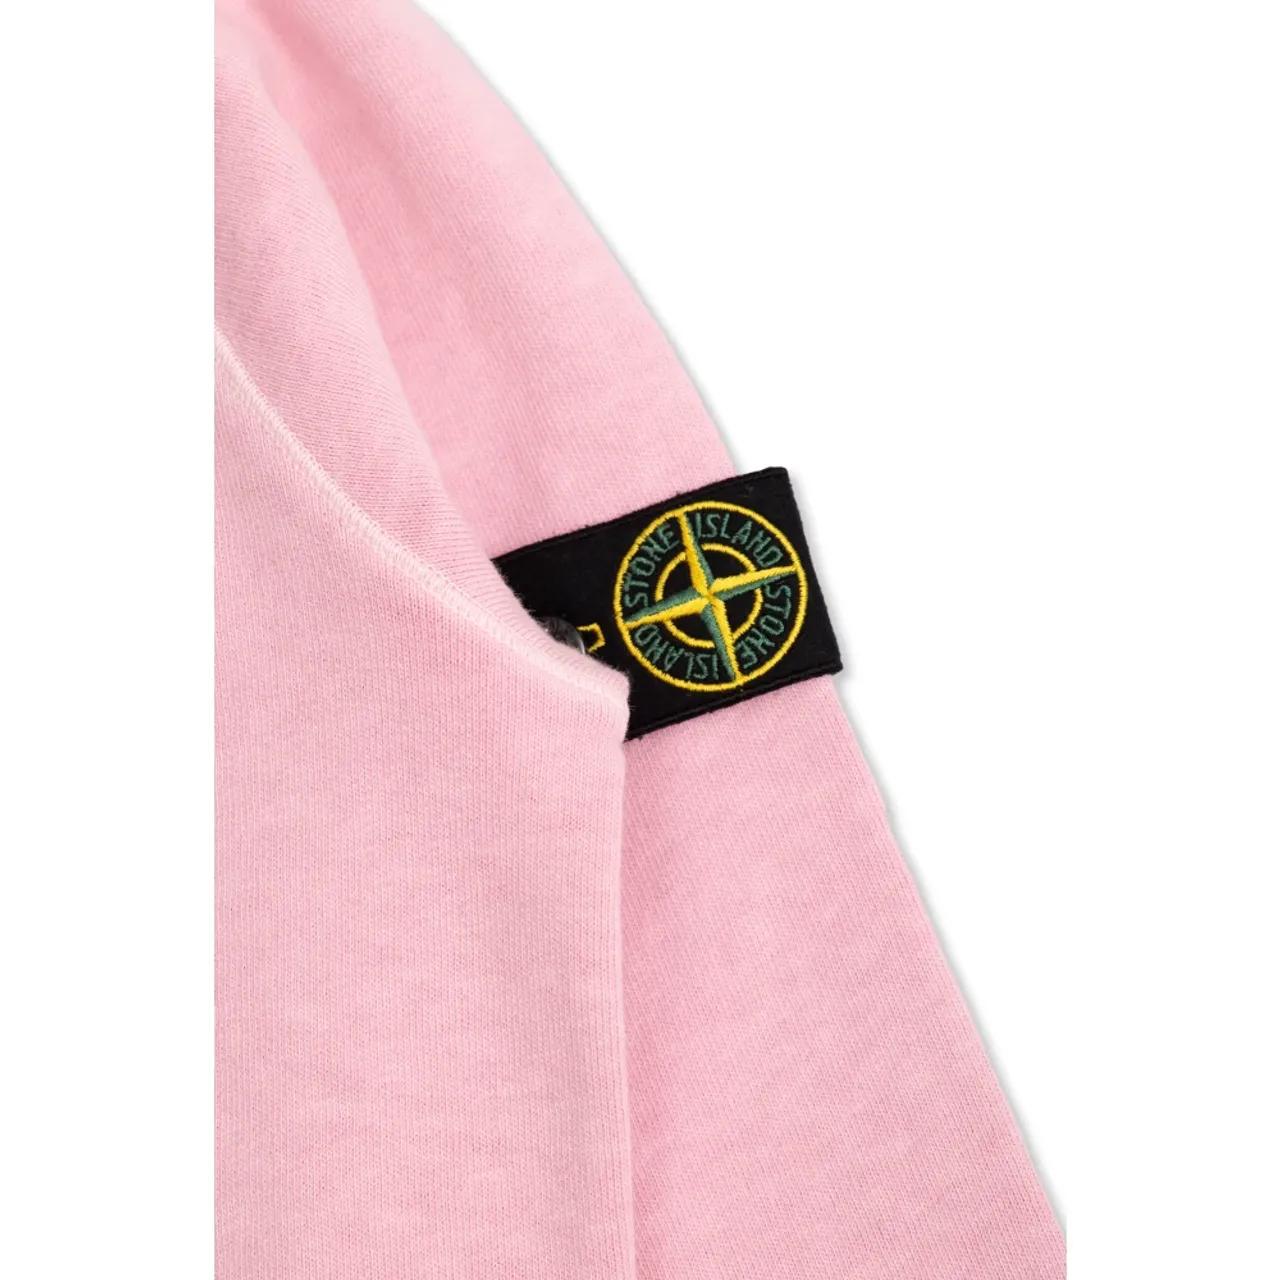 Stone Island , Sweatshirt with logo ,Pink female, Sizes: